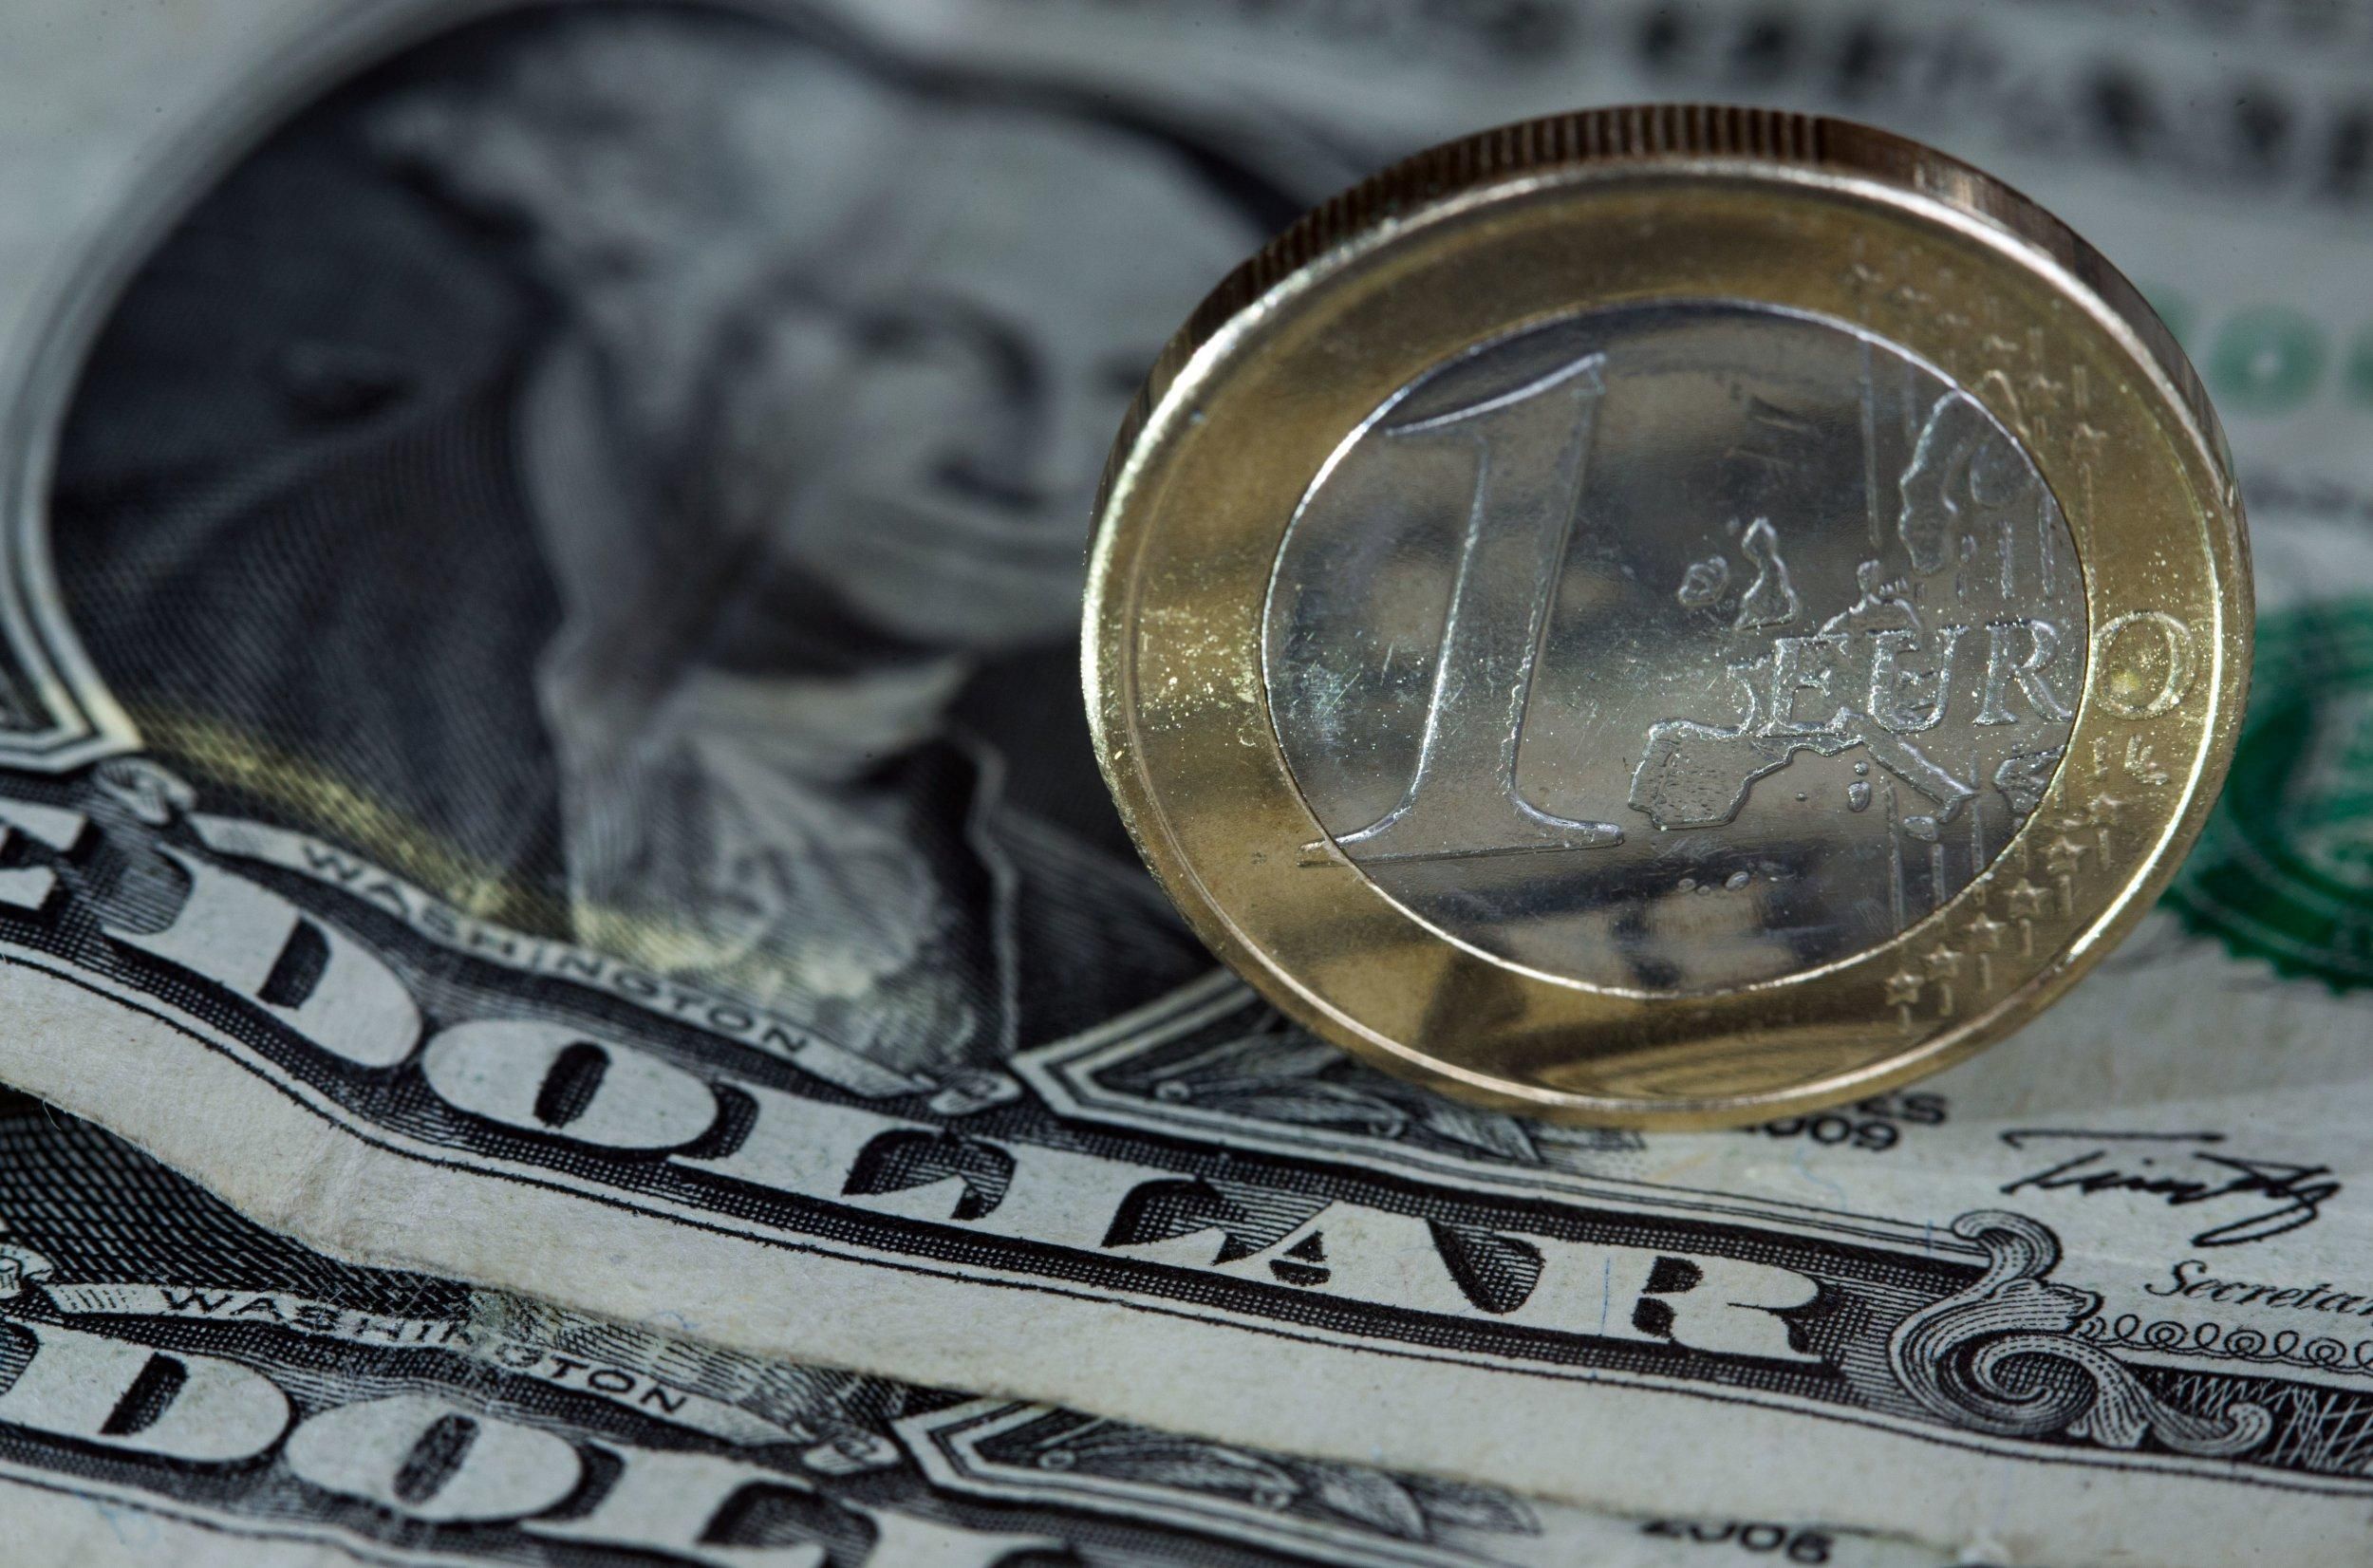 Нацбанк установил новую стоимость евро и злотого: курс валют на 17 мая